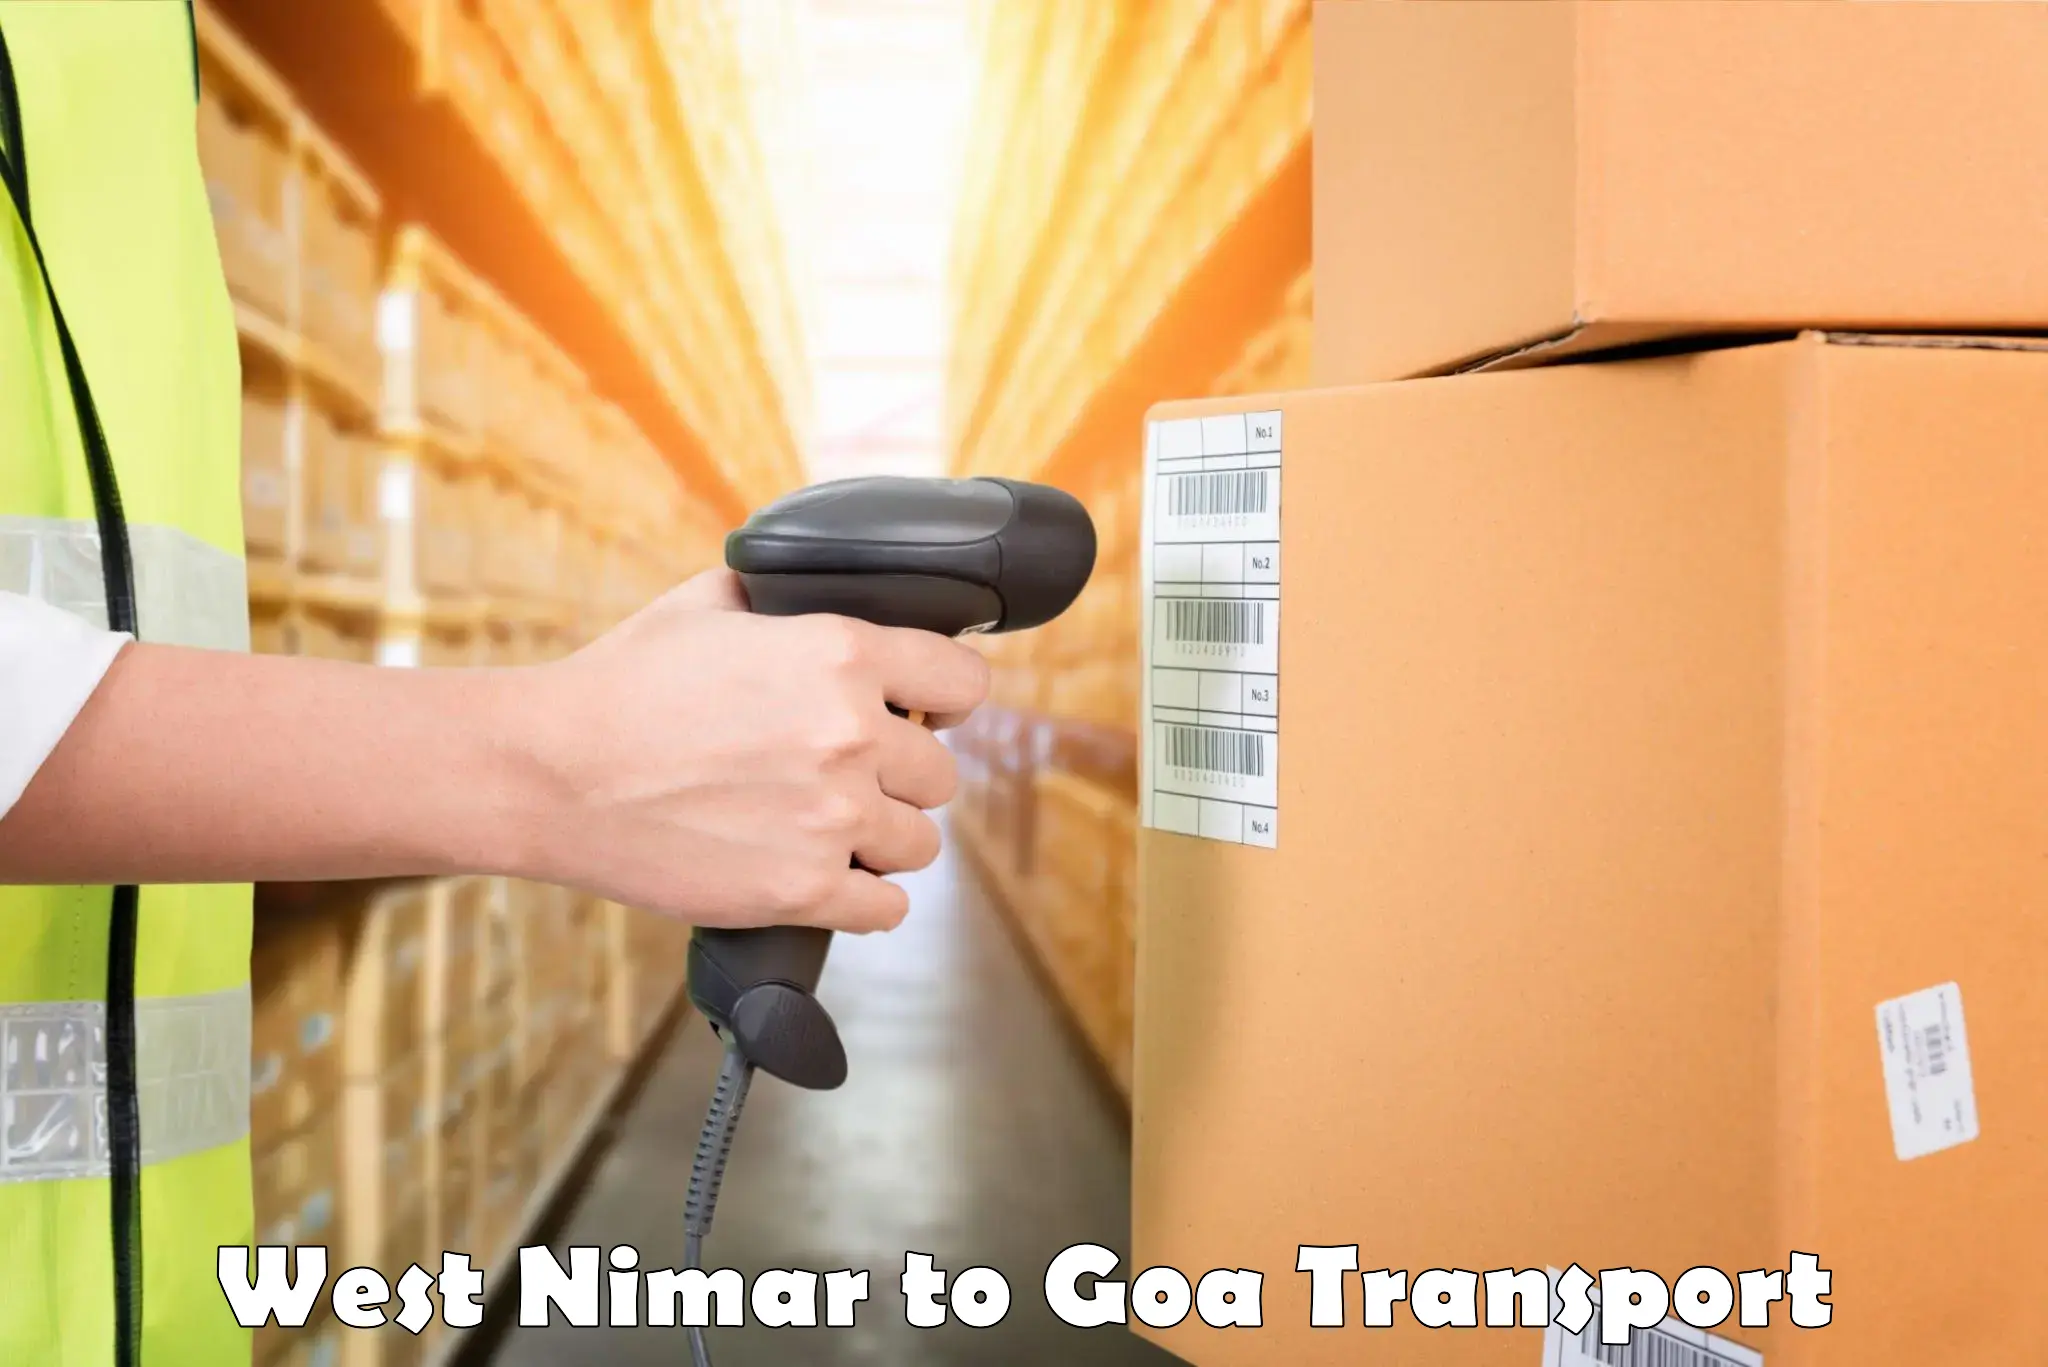 Container transport service in West Nimar to Vasco da Gama